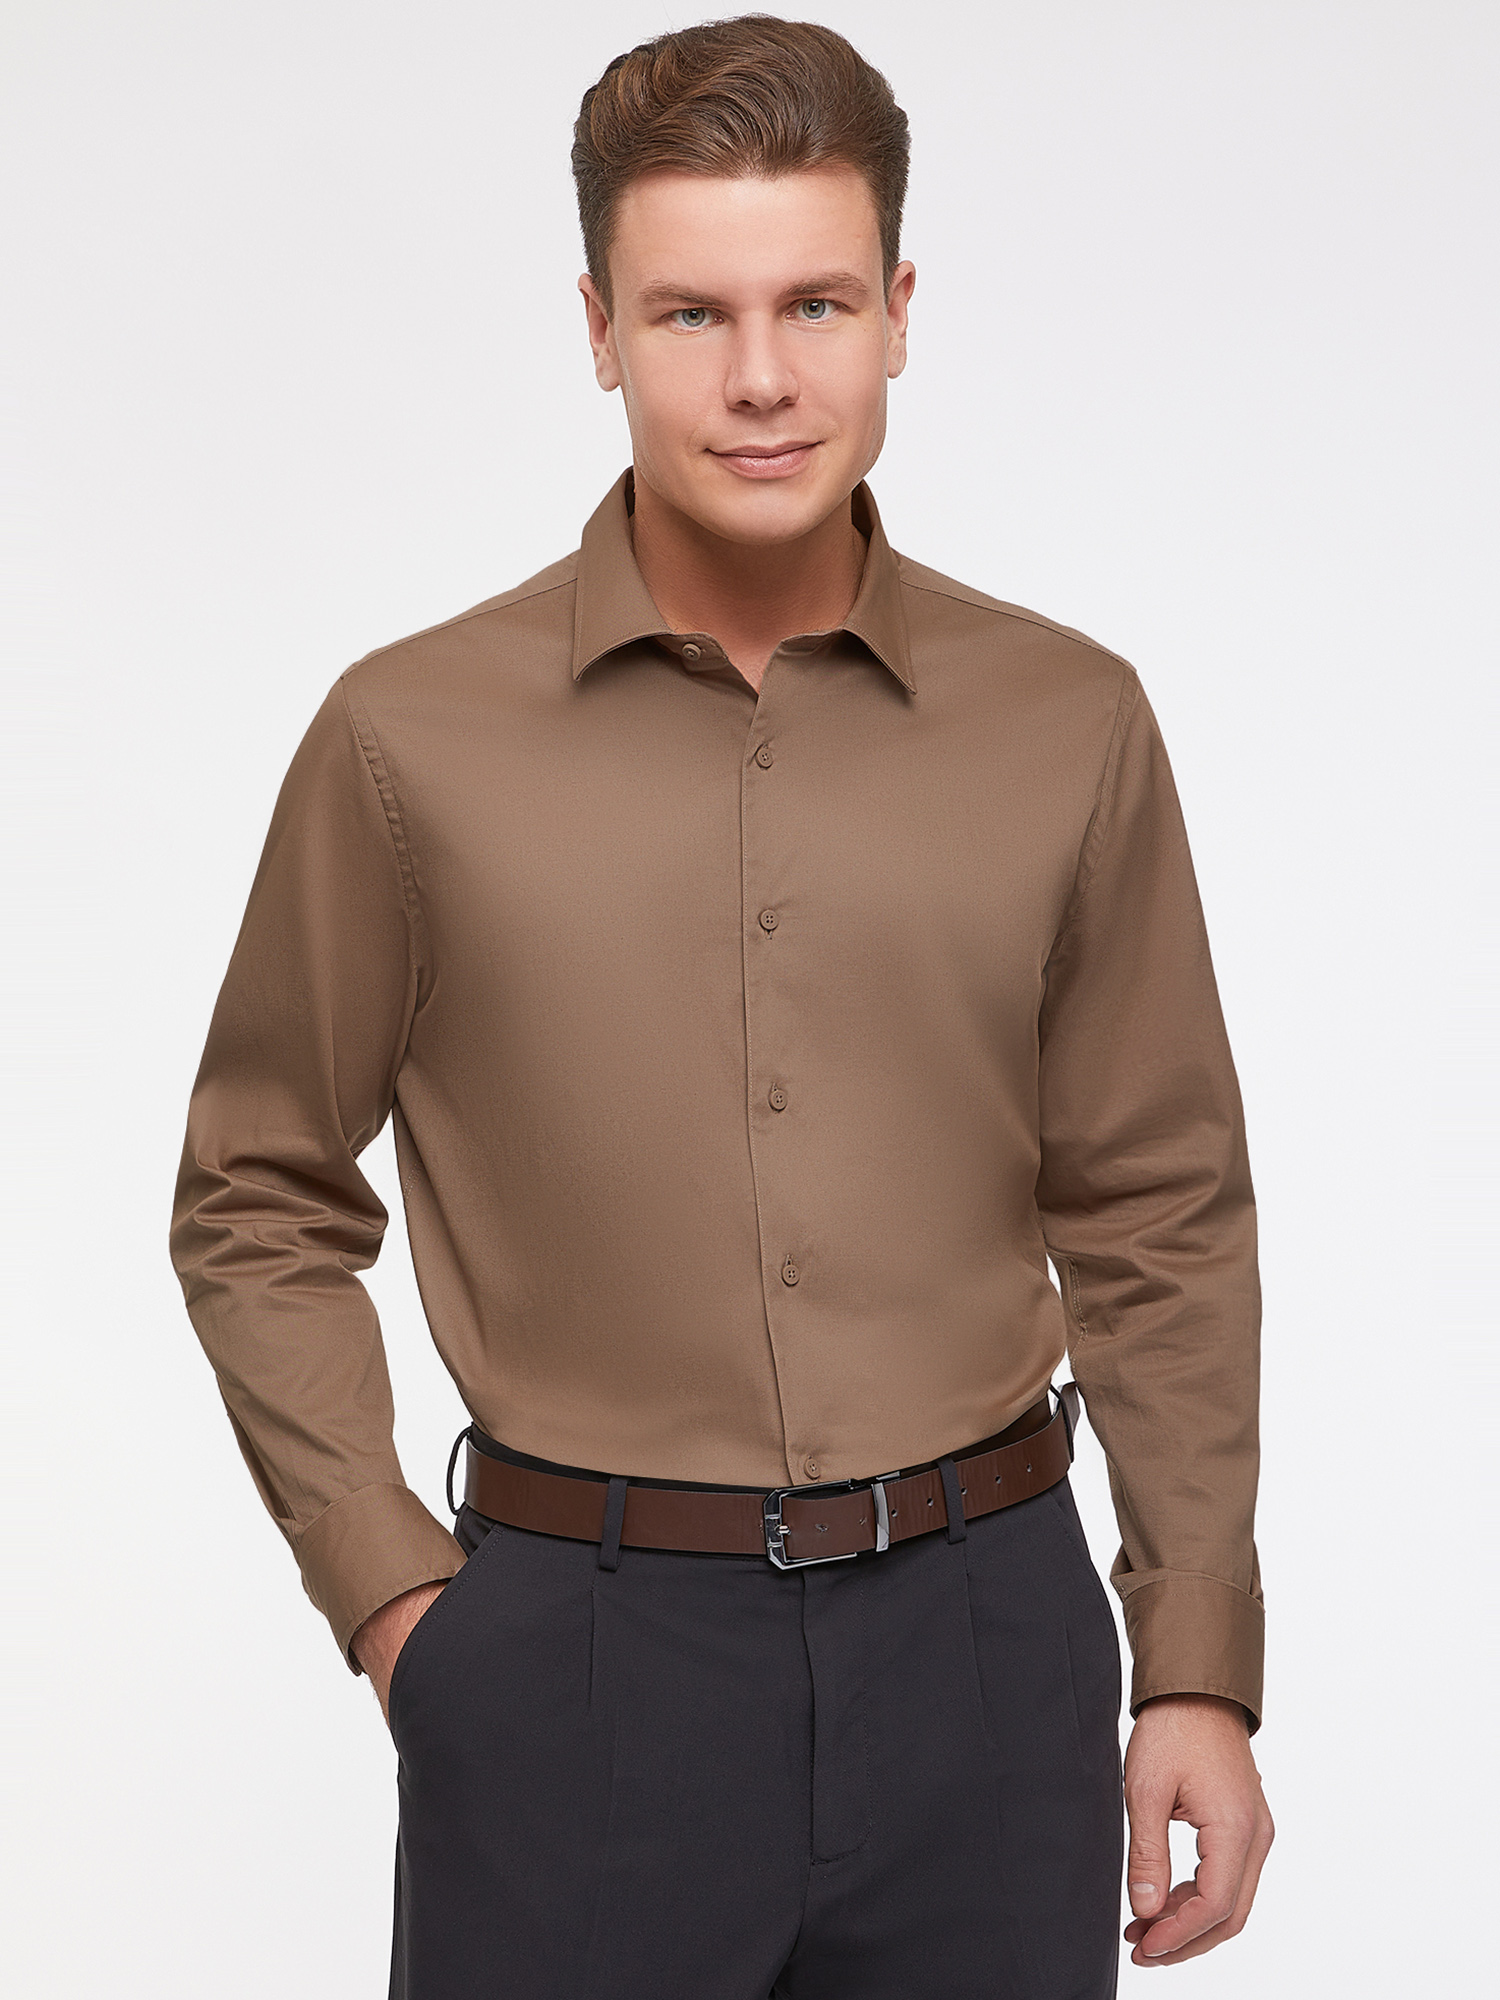 Рубашка мужская 3L110426M oodji коричневая L – купить в Москве, цены в интернет-магазинах на Мегамаркет